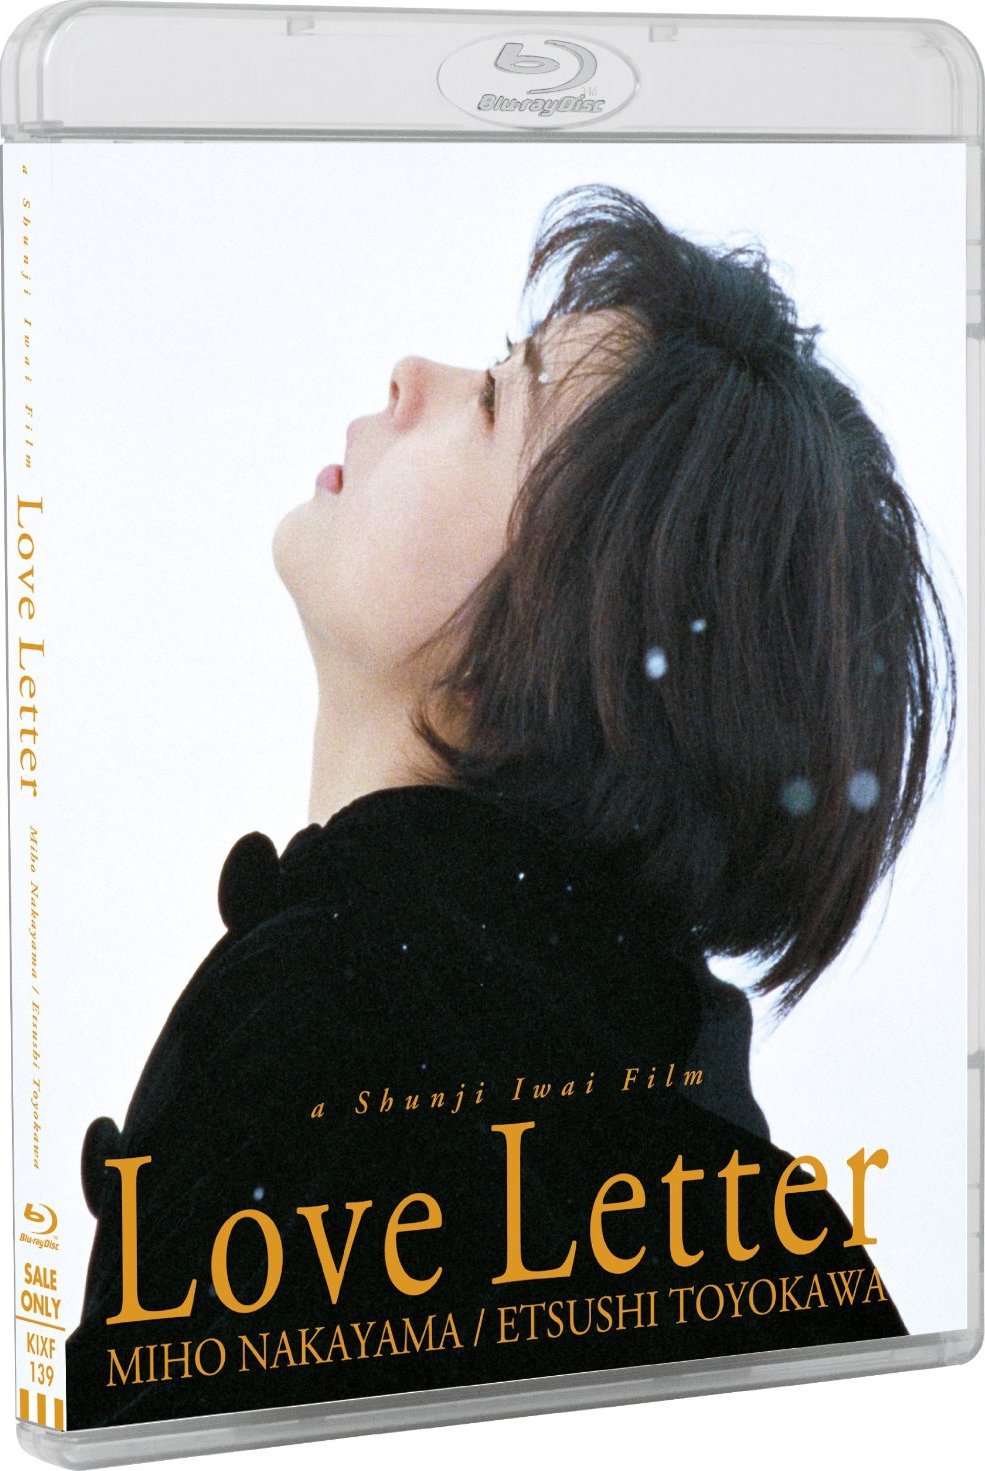 情书].Love.Letter.1995.BluRay.1080p.AVC.TrueHD.5.1.DIY-Chinagear 